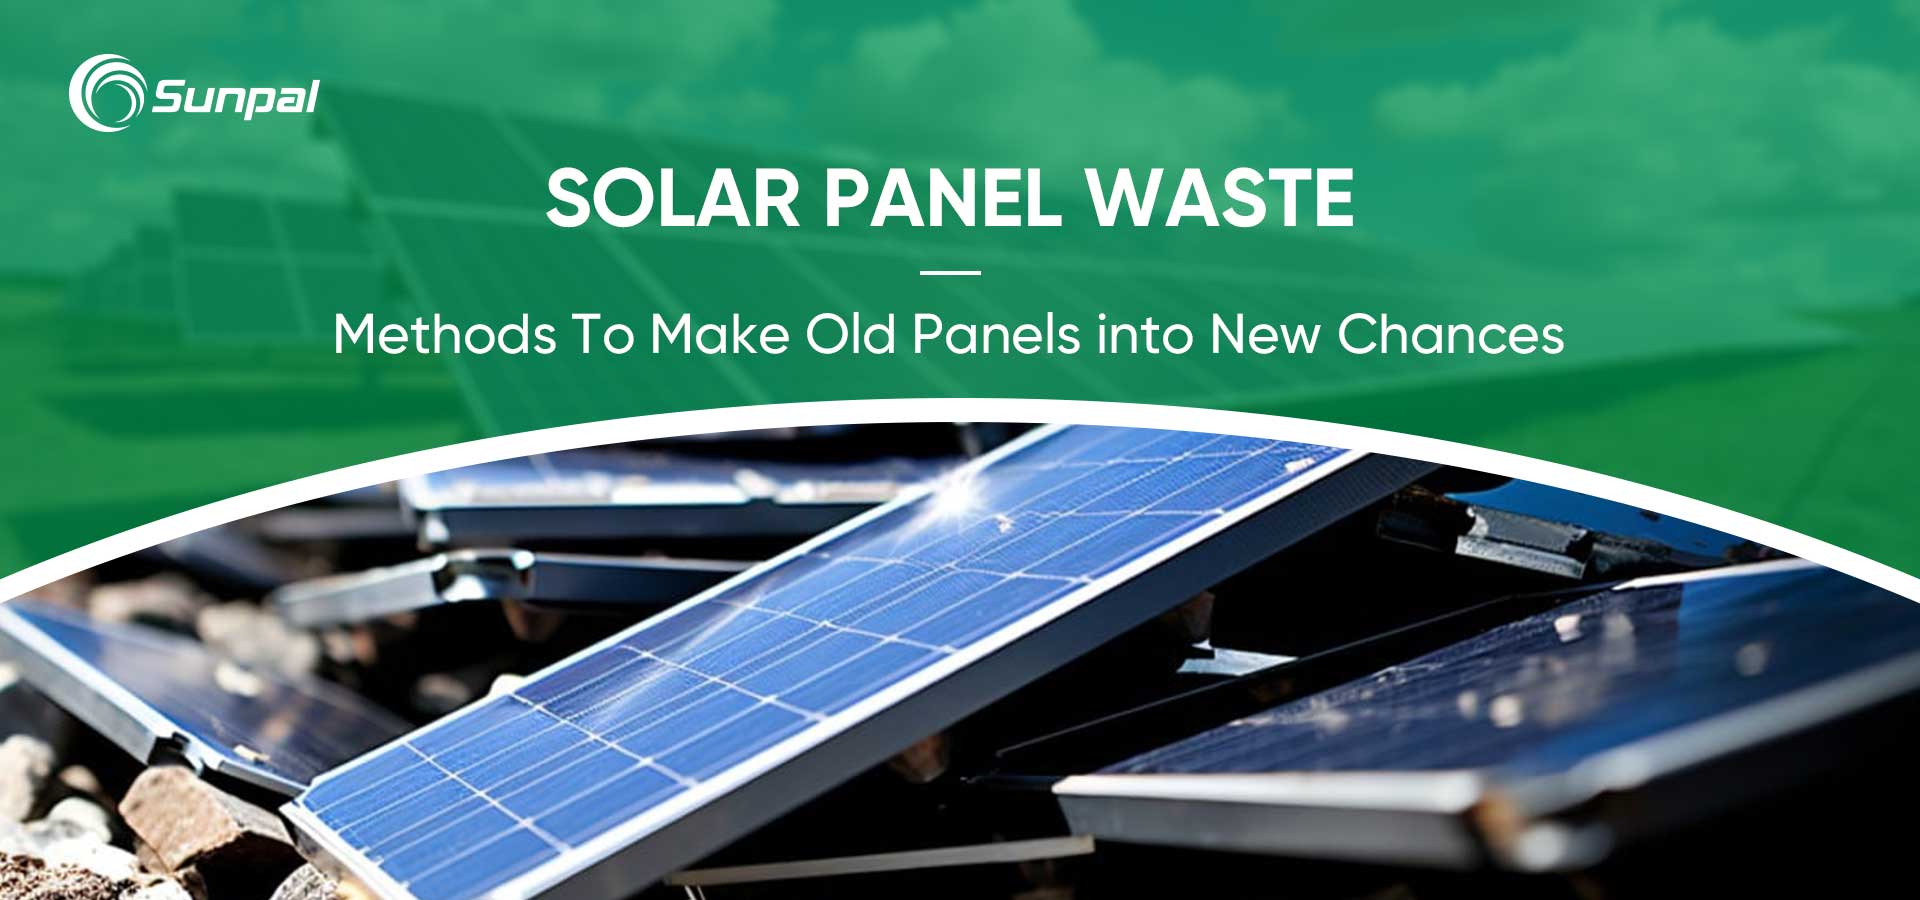 Valorisation des déchets de panneaux solaires : transformer les vieux panneaux en nouvelles opportunités